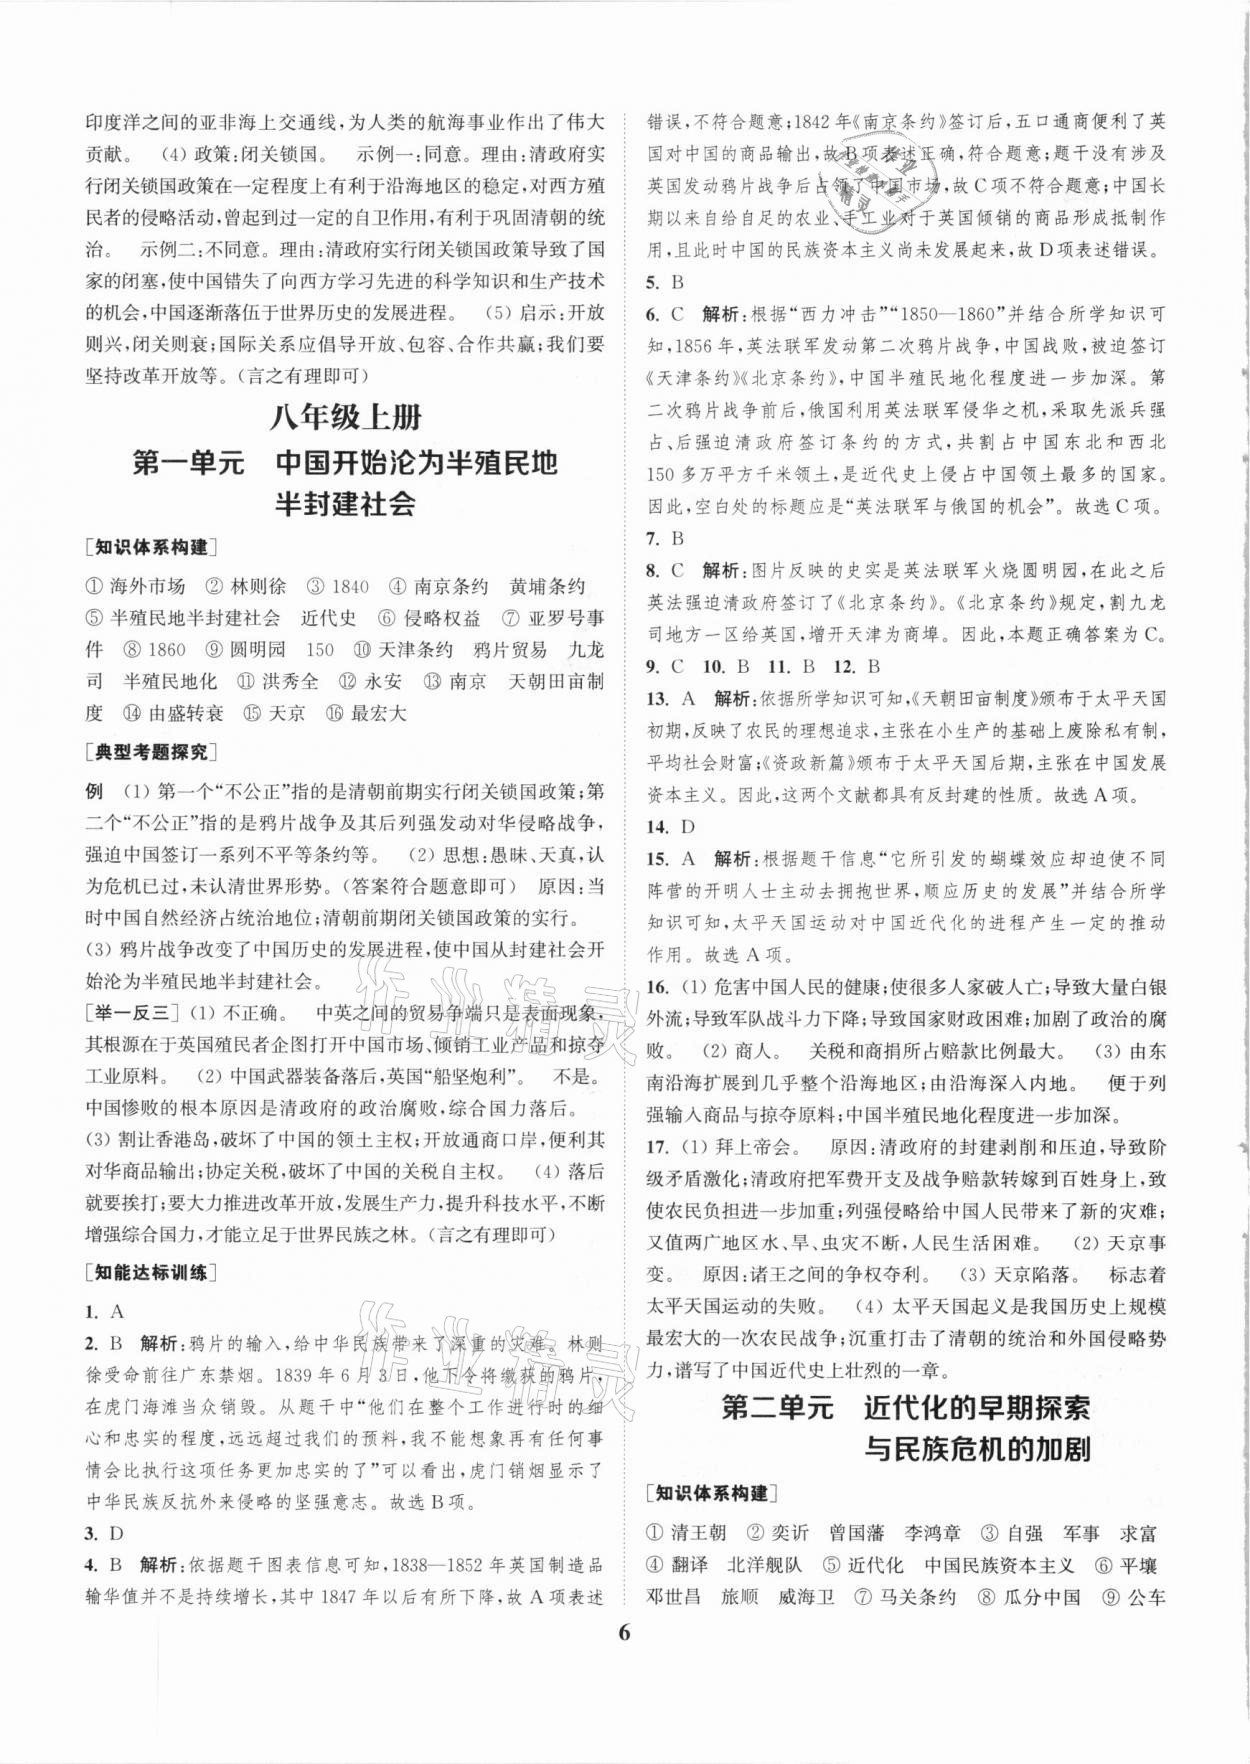 2021年通城学典通城1典中考复习方略历史江苏专用 第6页